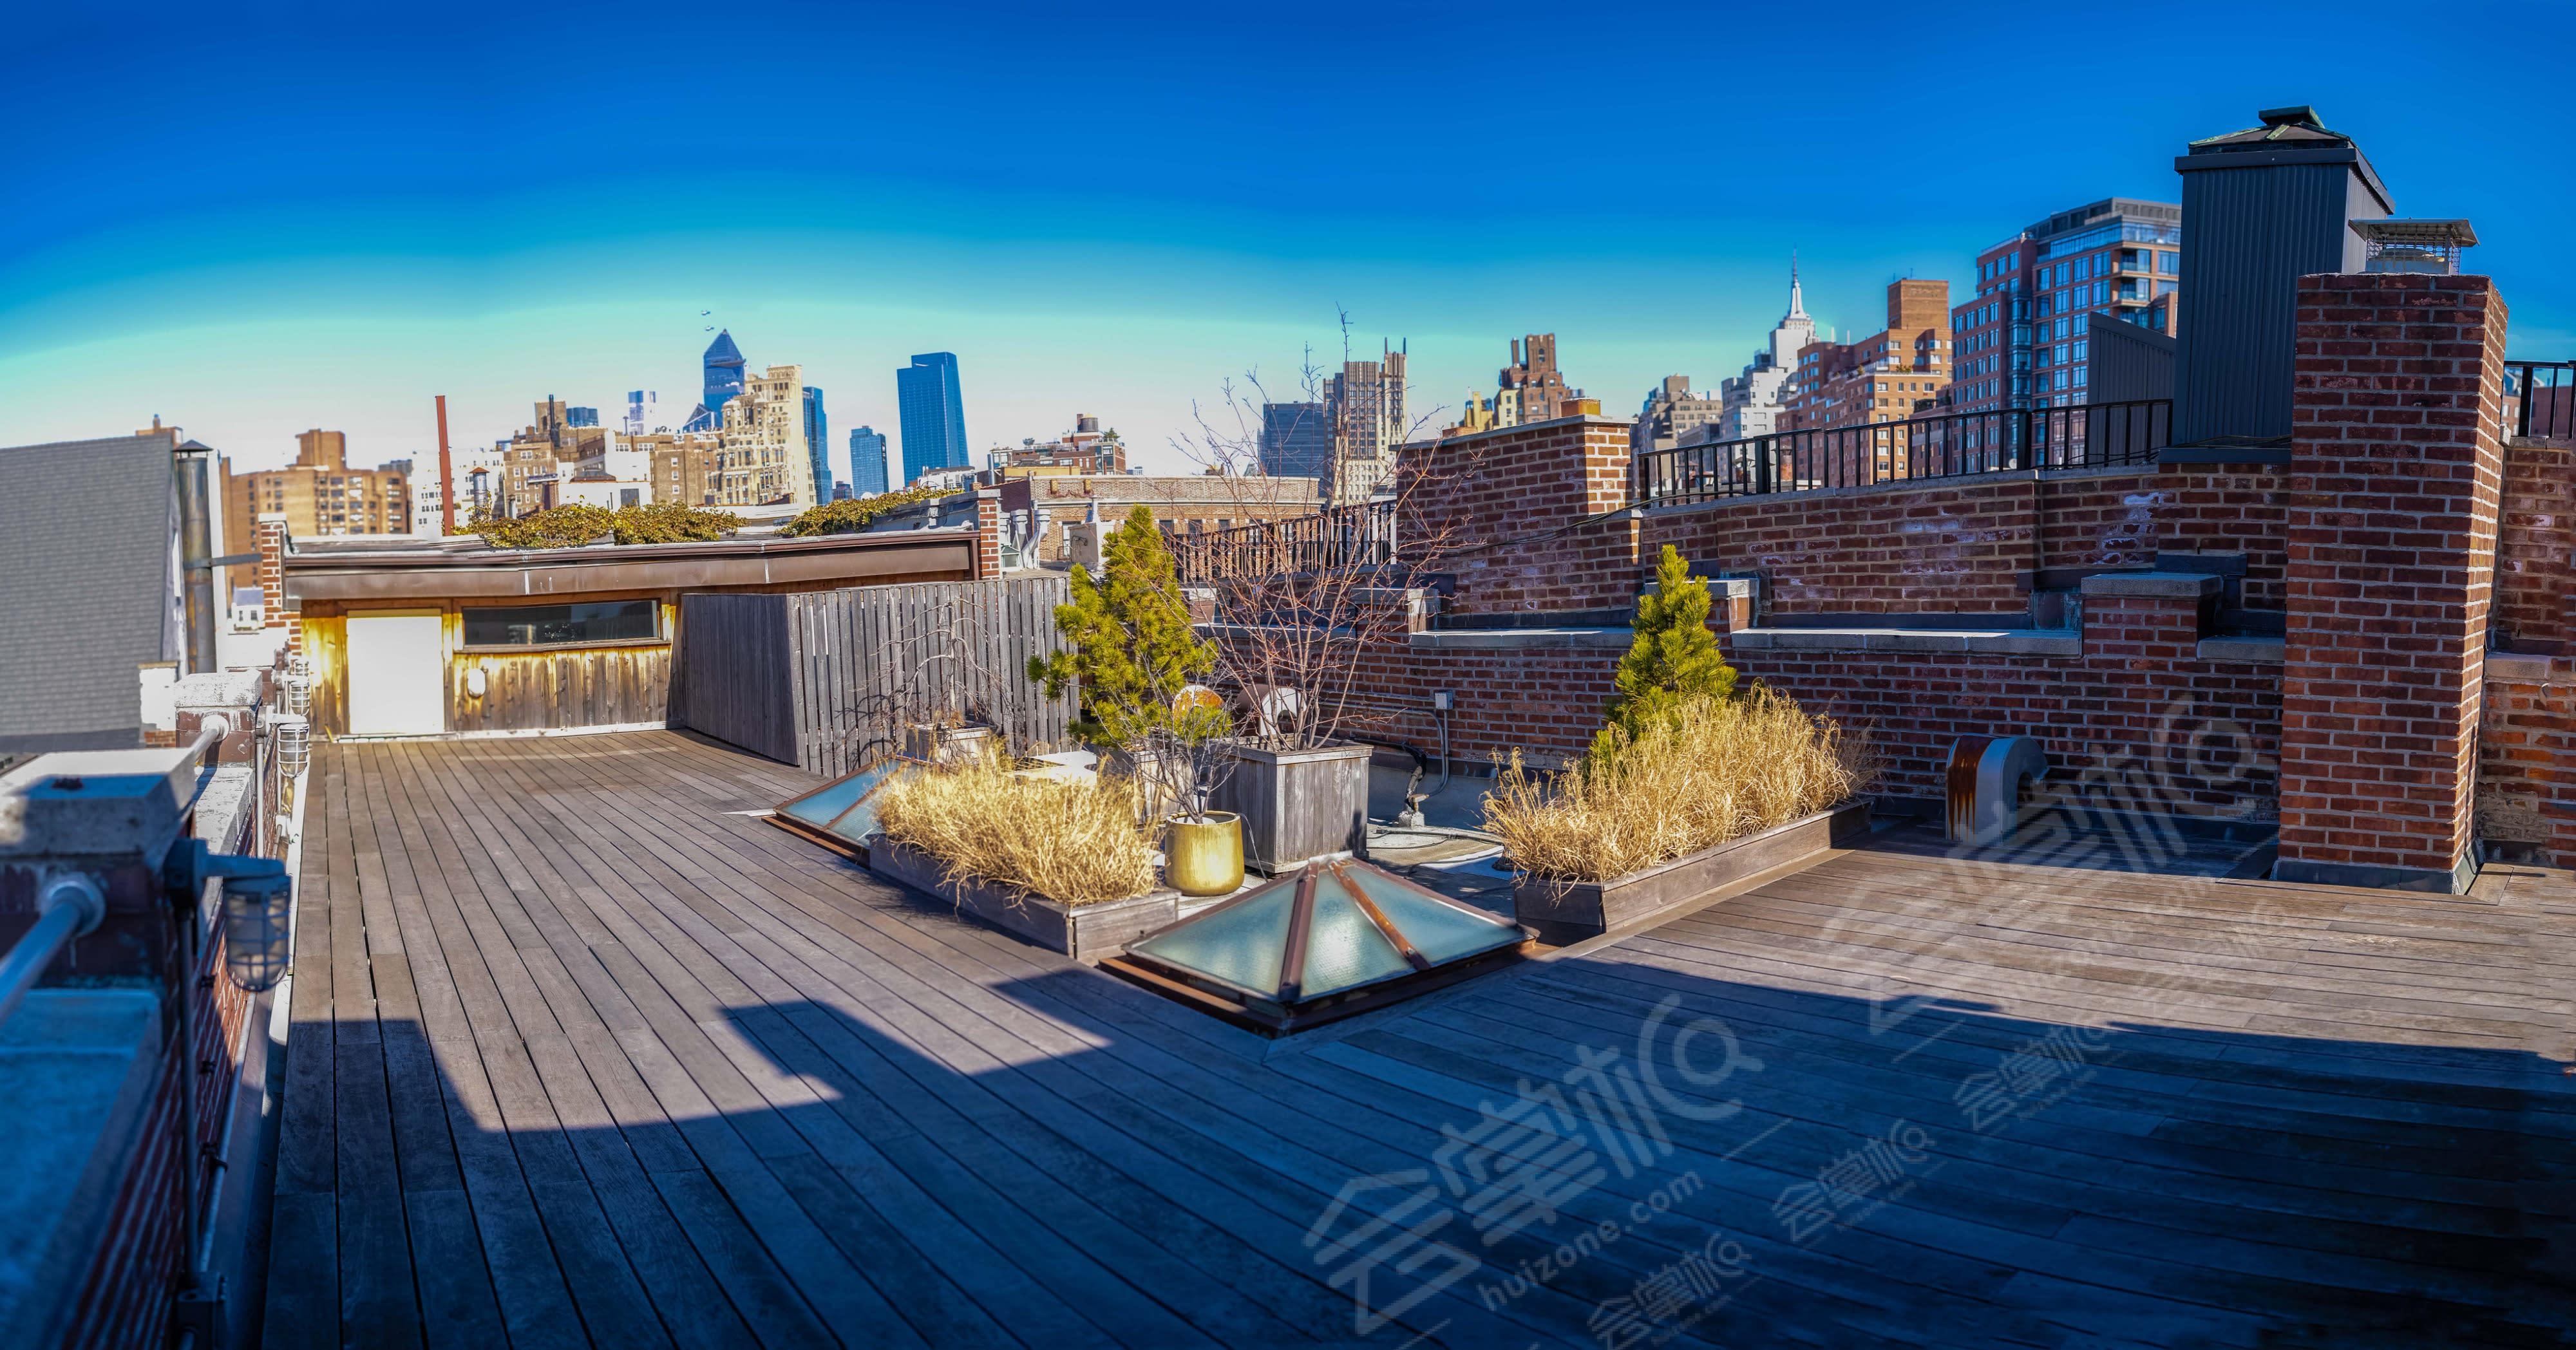 Manhattan Rooftop Garden with Skyline View